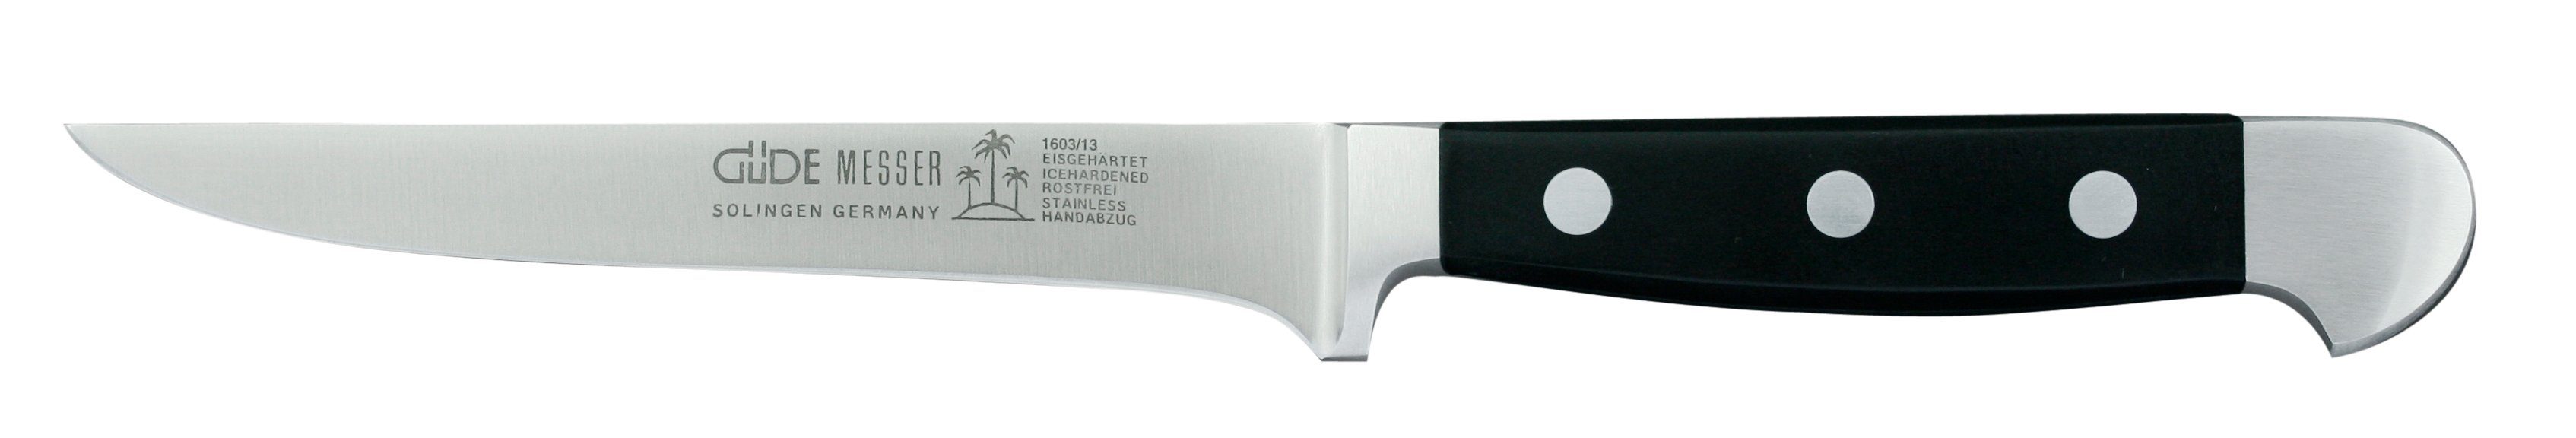 Güde Messer Solingen Schale Alpha, Messerstahl, Ausbeinmesser 13 cm - CVM-Messerstahl - Griffschalen Hostaform